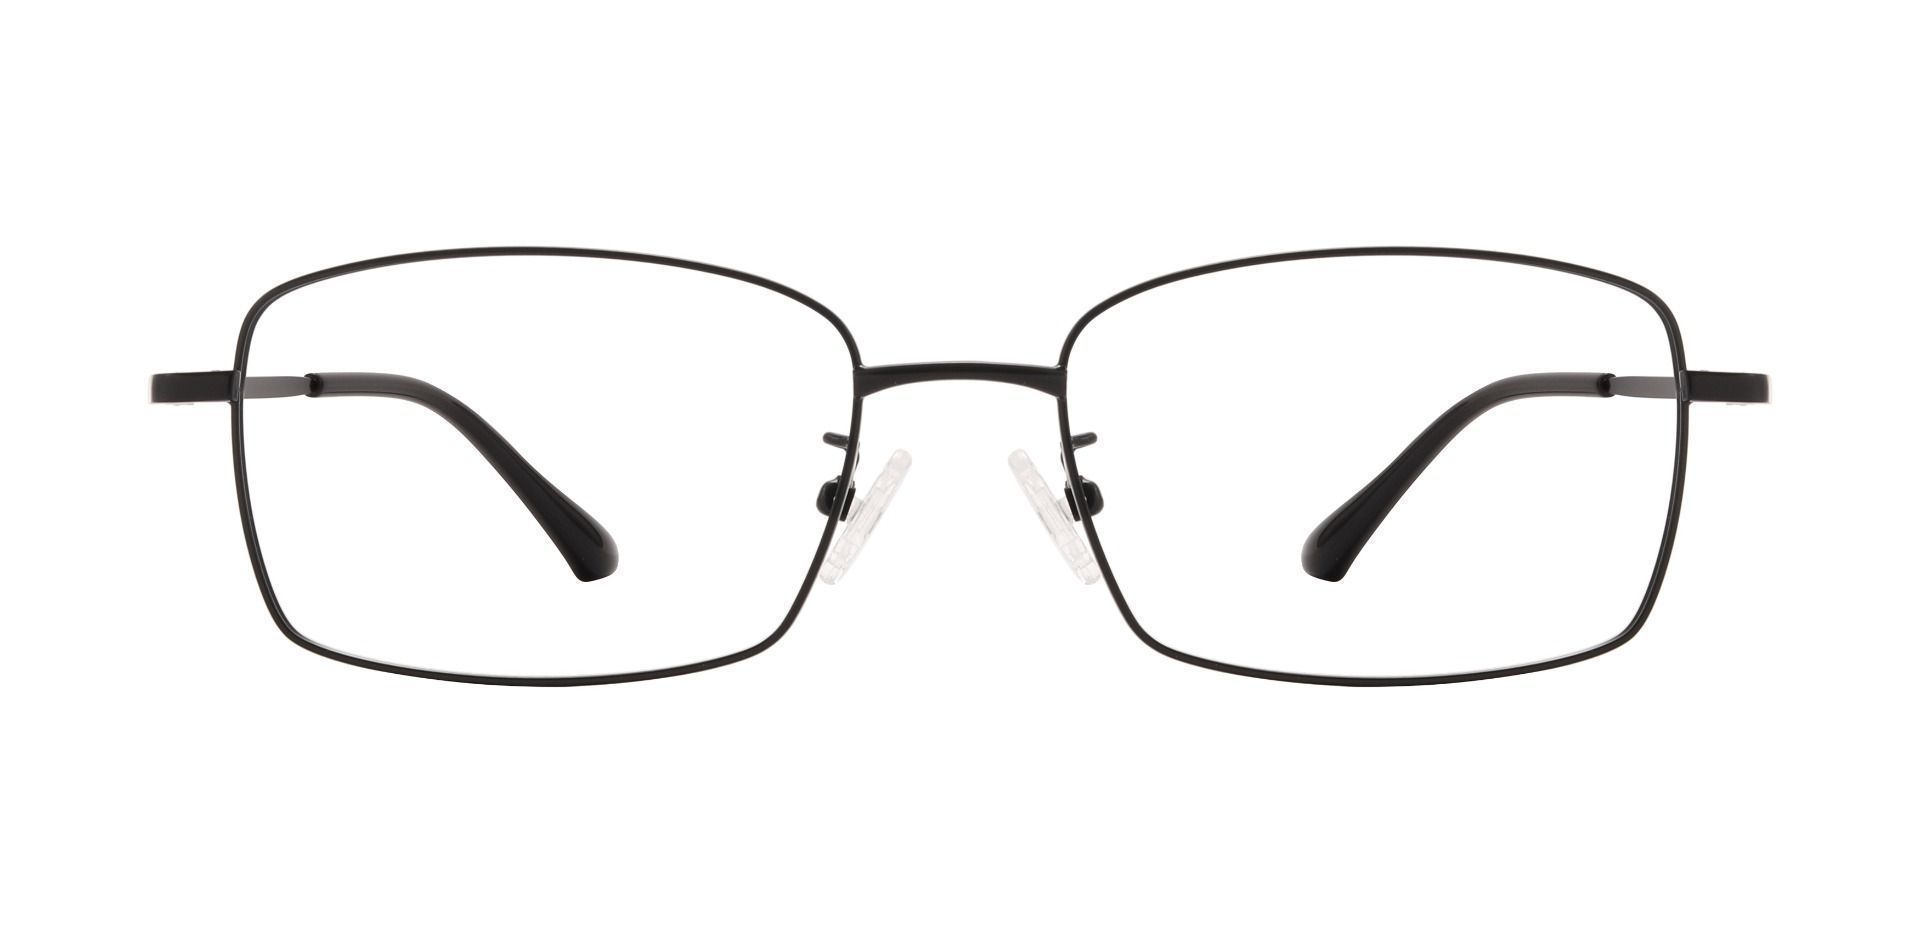 Rosen Rectangle Progressive Glasses - Black | Men's Eyeglasses | Payne ...